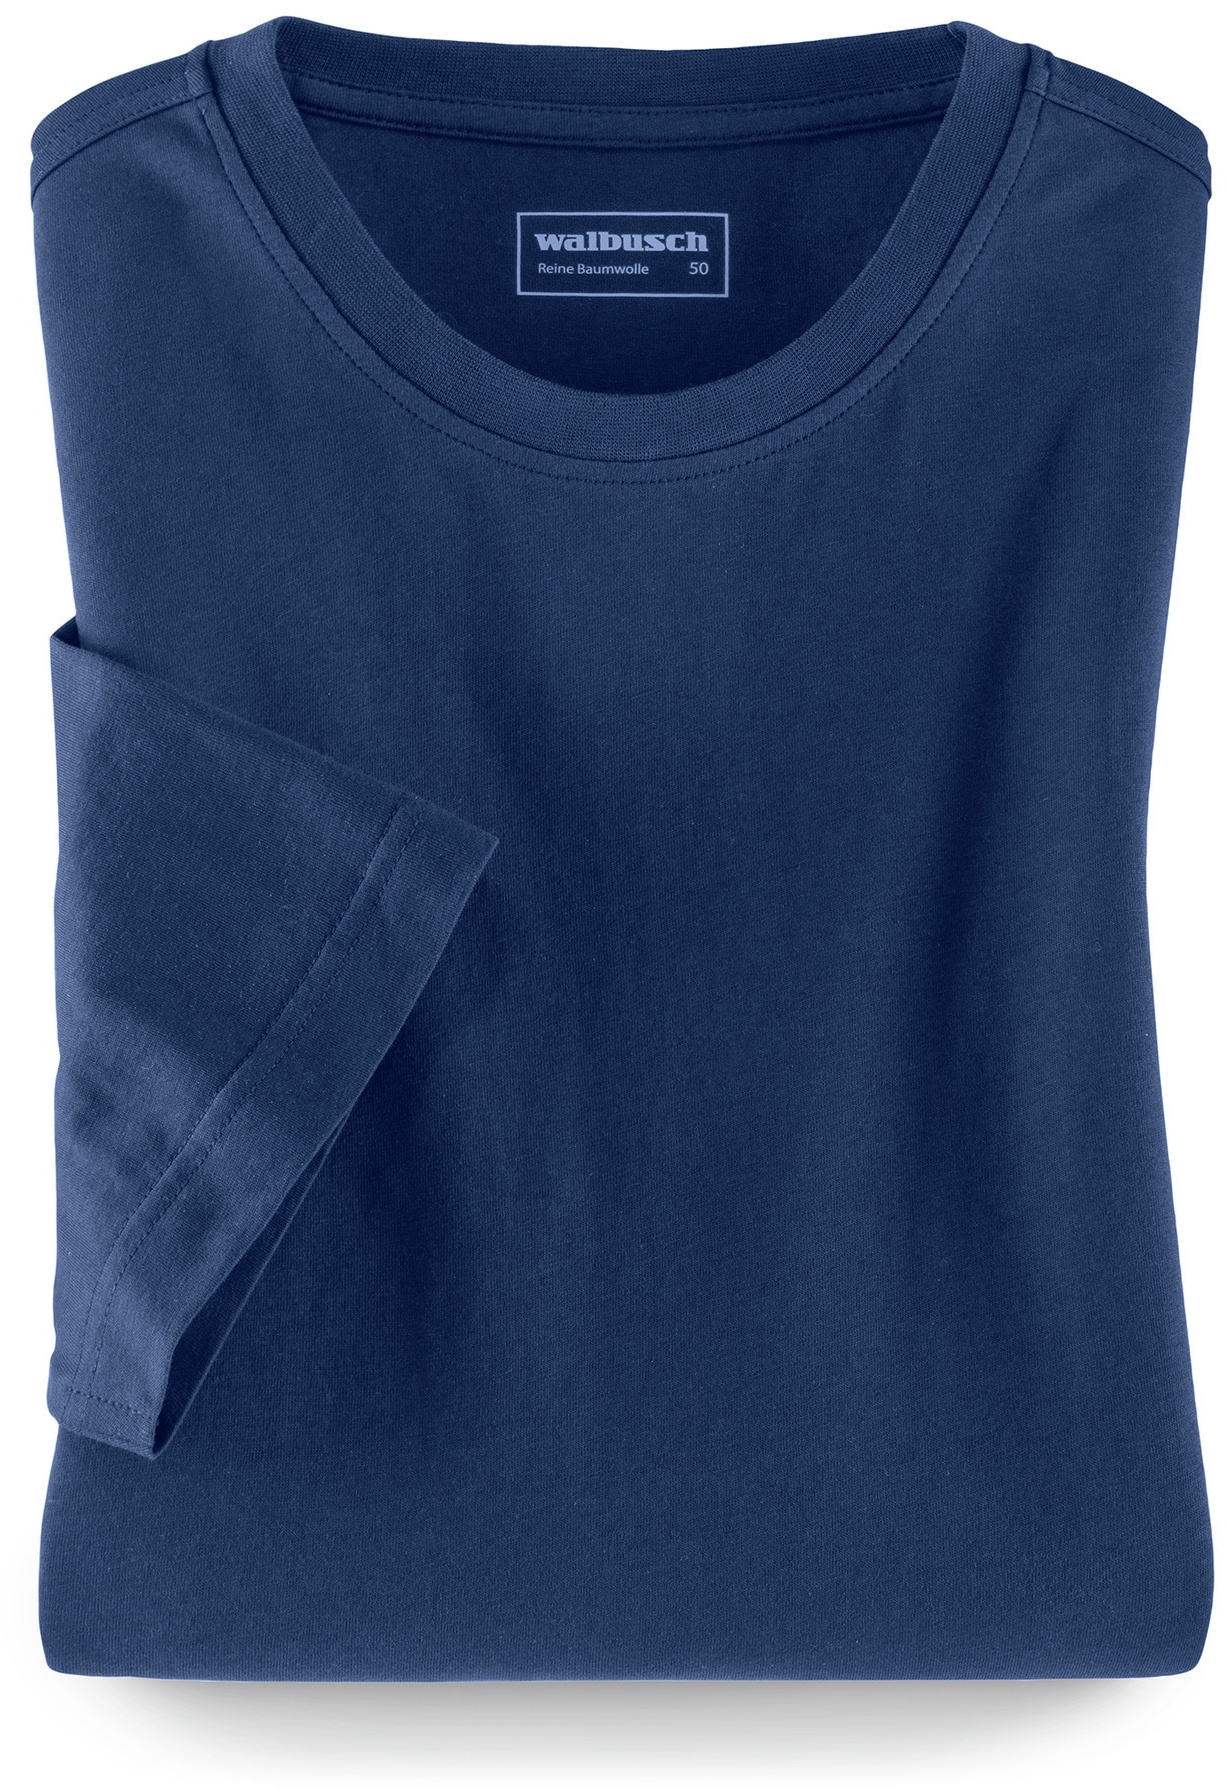 Walbusch Herren T Shirt Rundhalsausschnitt einfarbig Blau 54